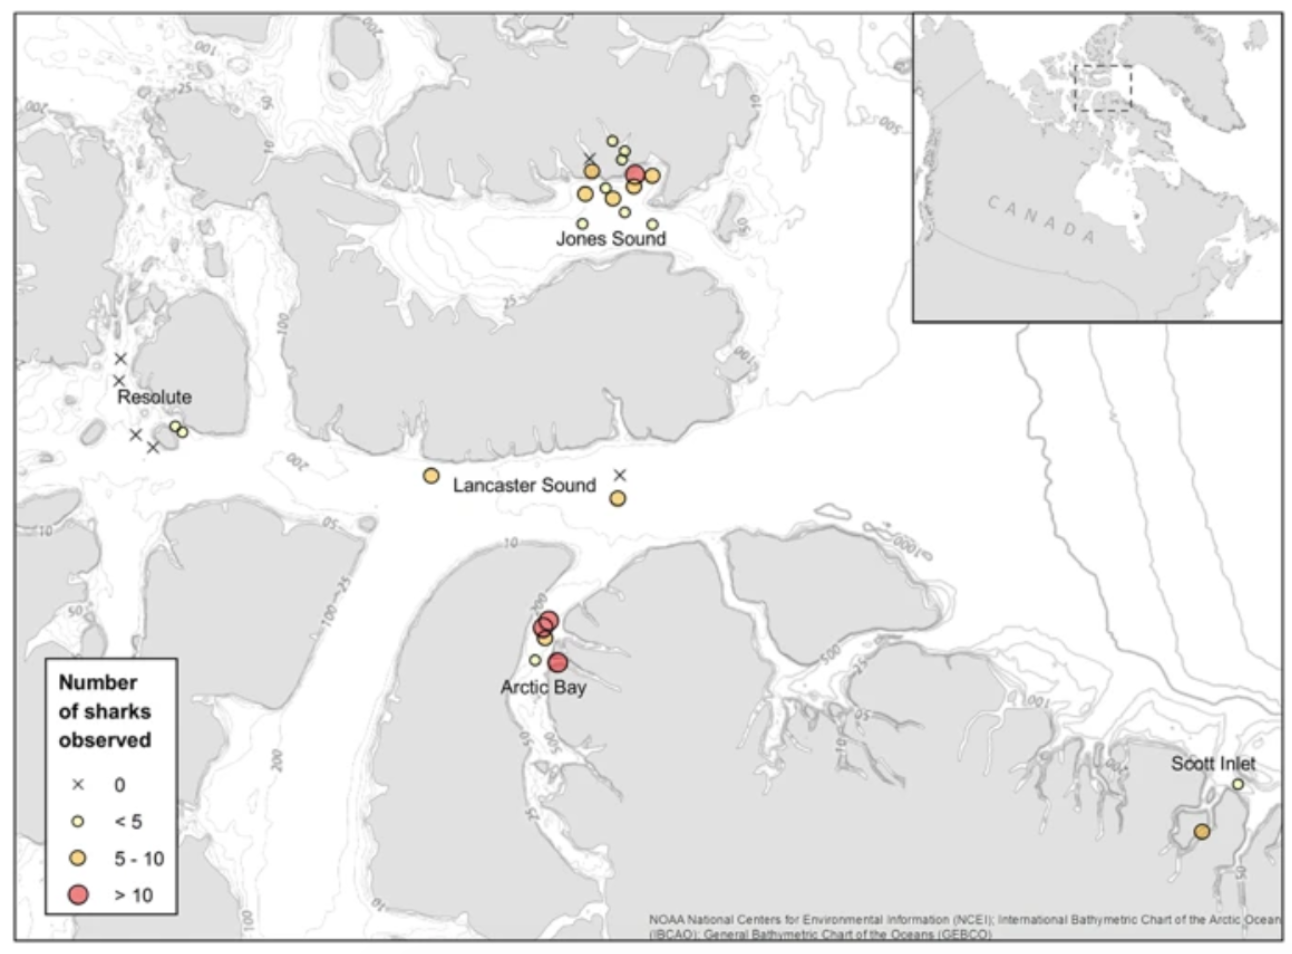 Cette image identifie les distributions de requins dans le détroit de Lancaster